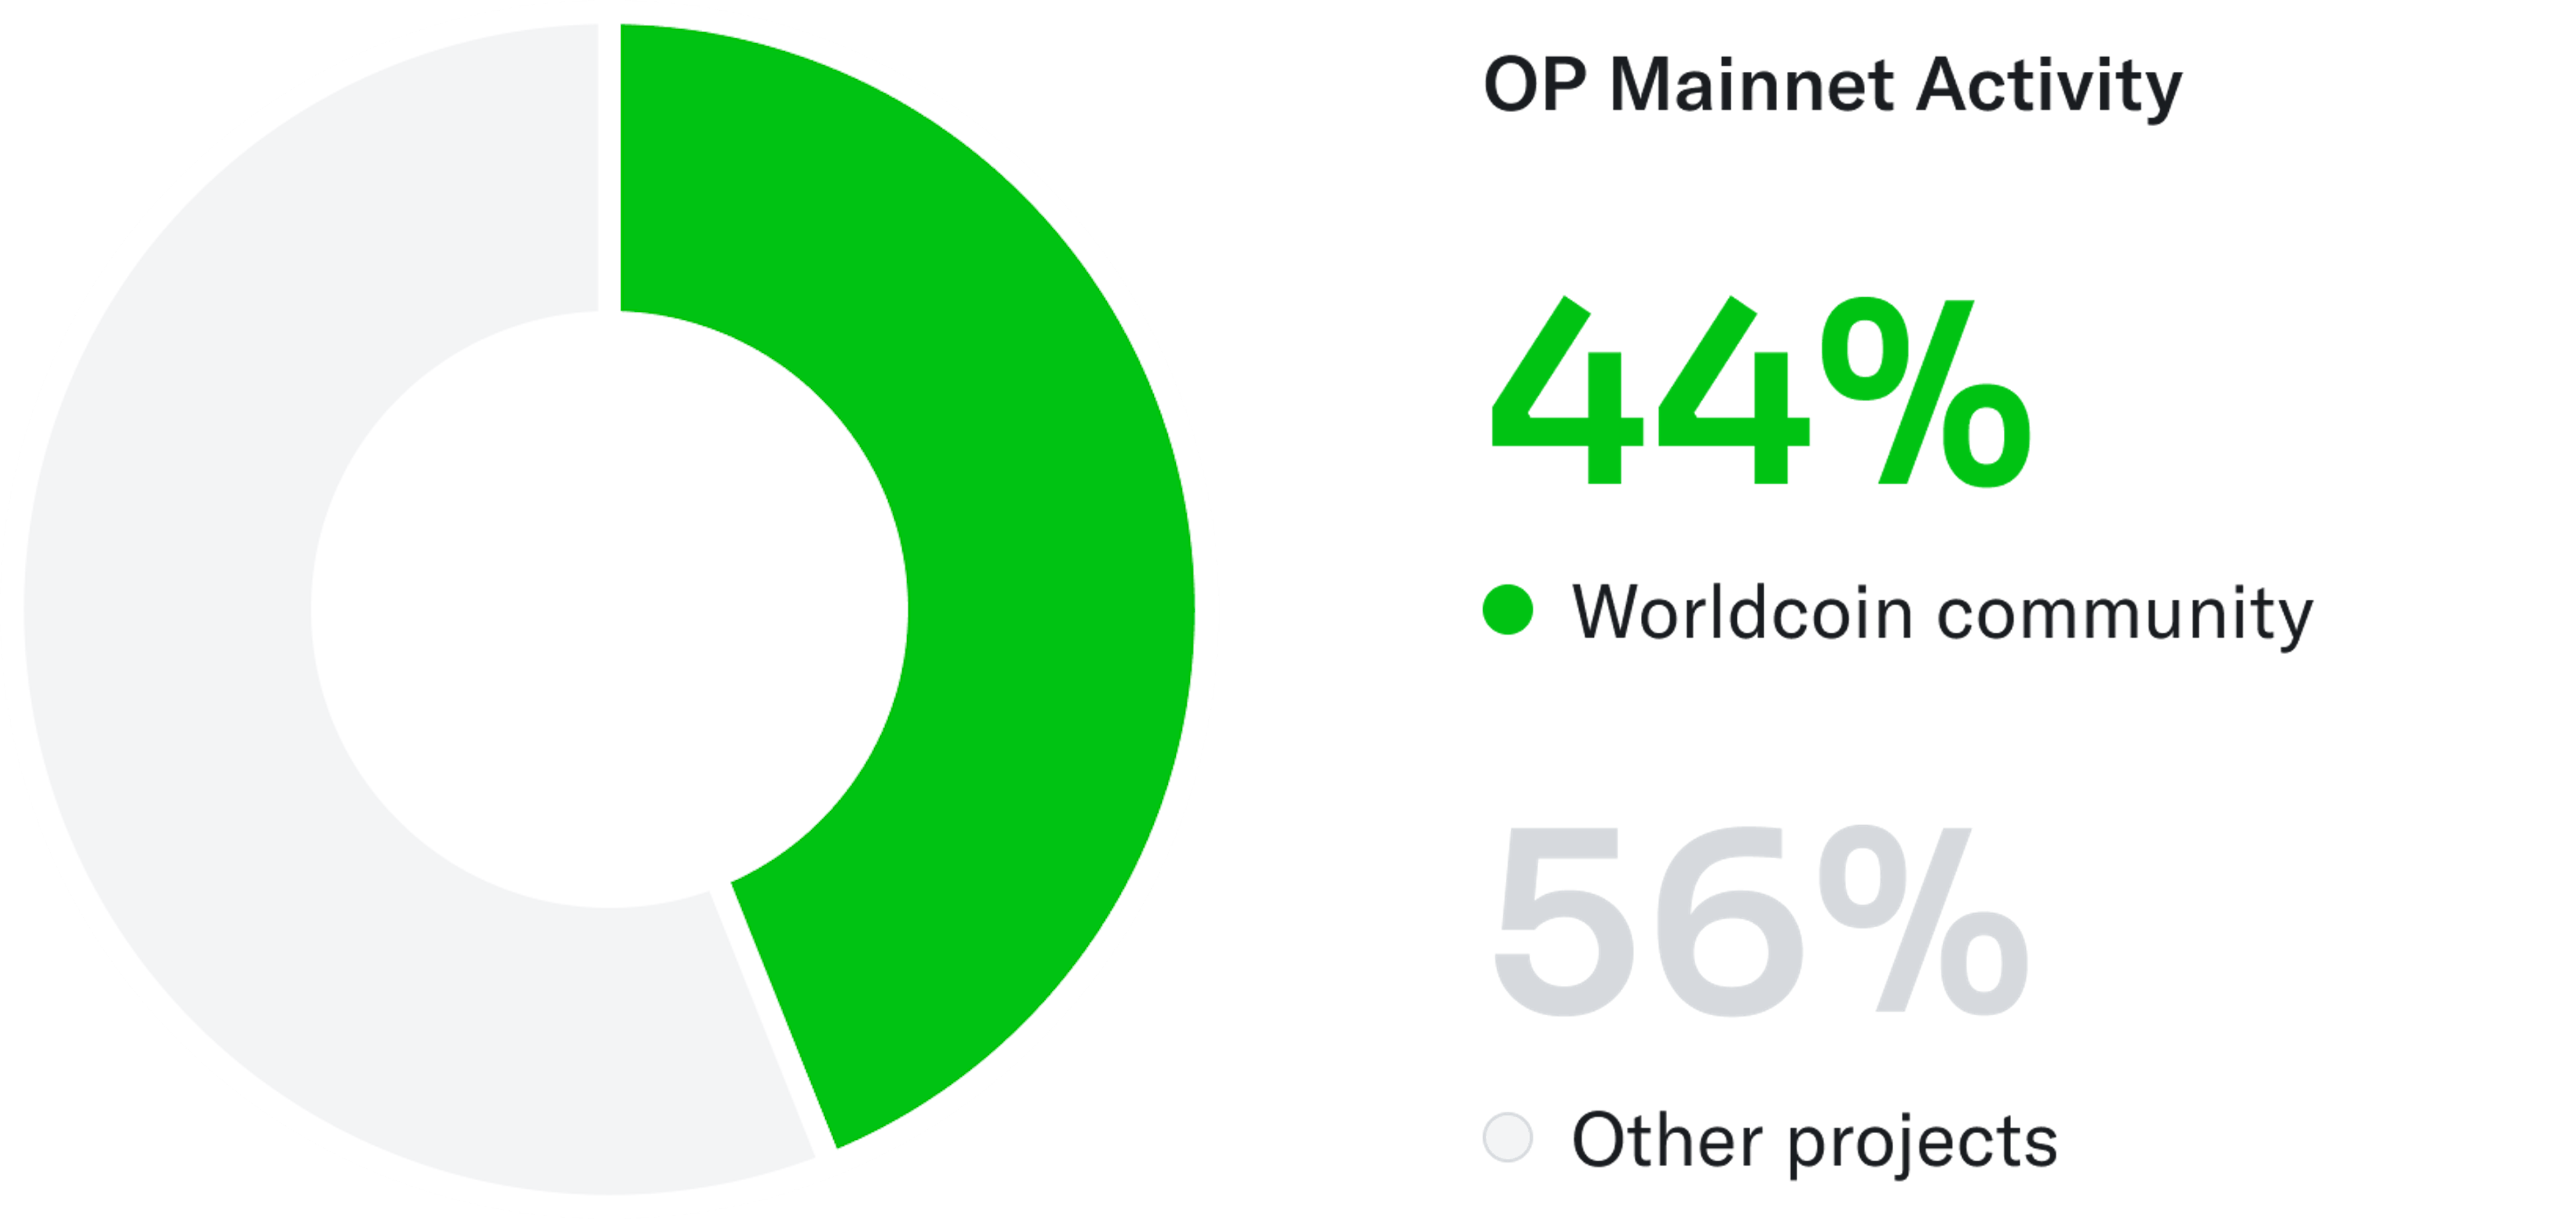 Người dùng Worldcoin hiện chiếm khoảng 44% tổng gas L2 được tiêu thụ trên OP Mainnet.